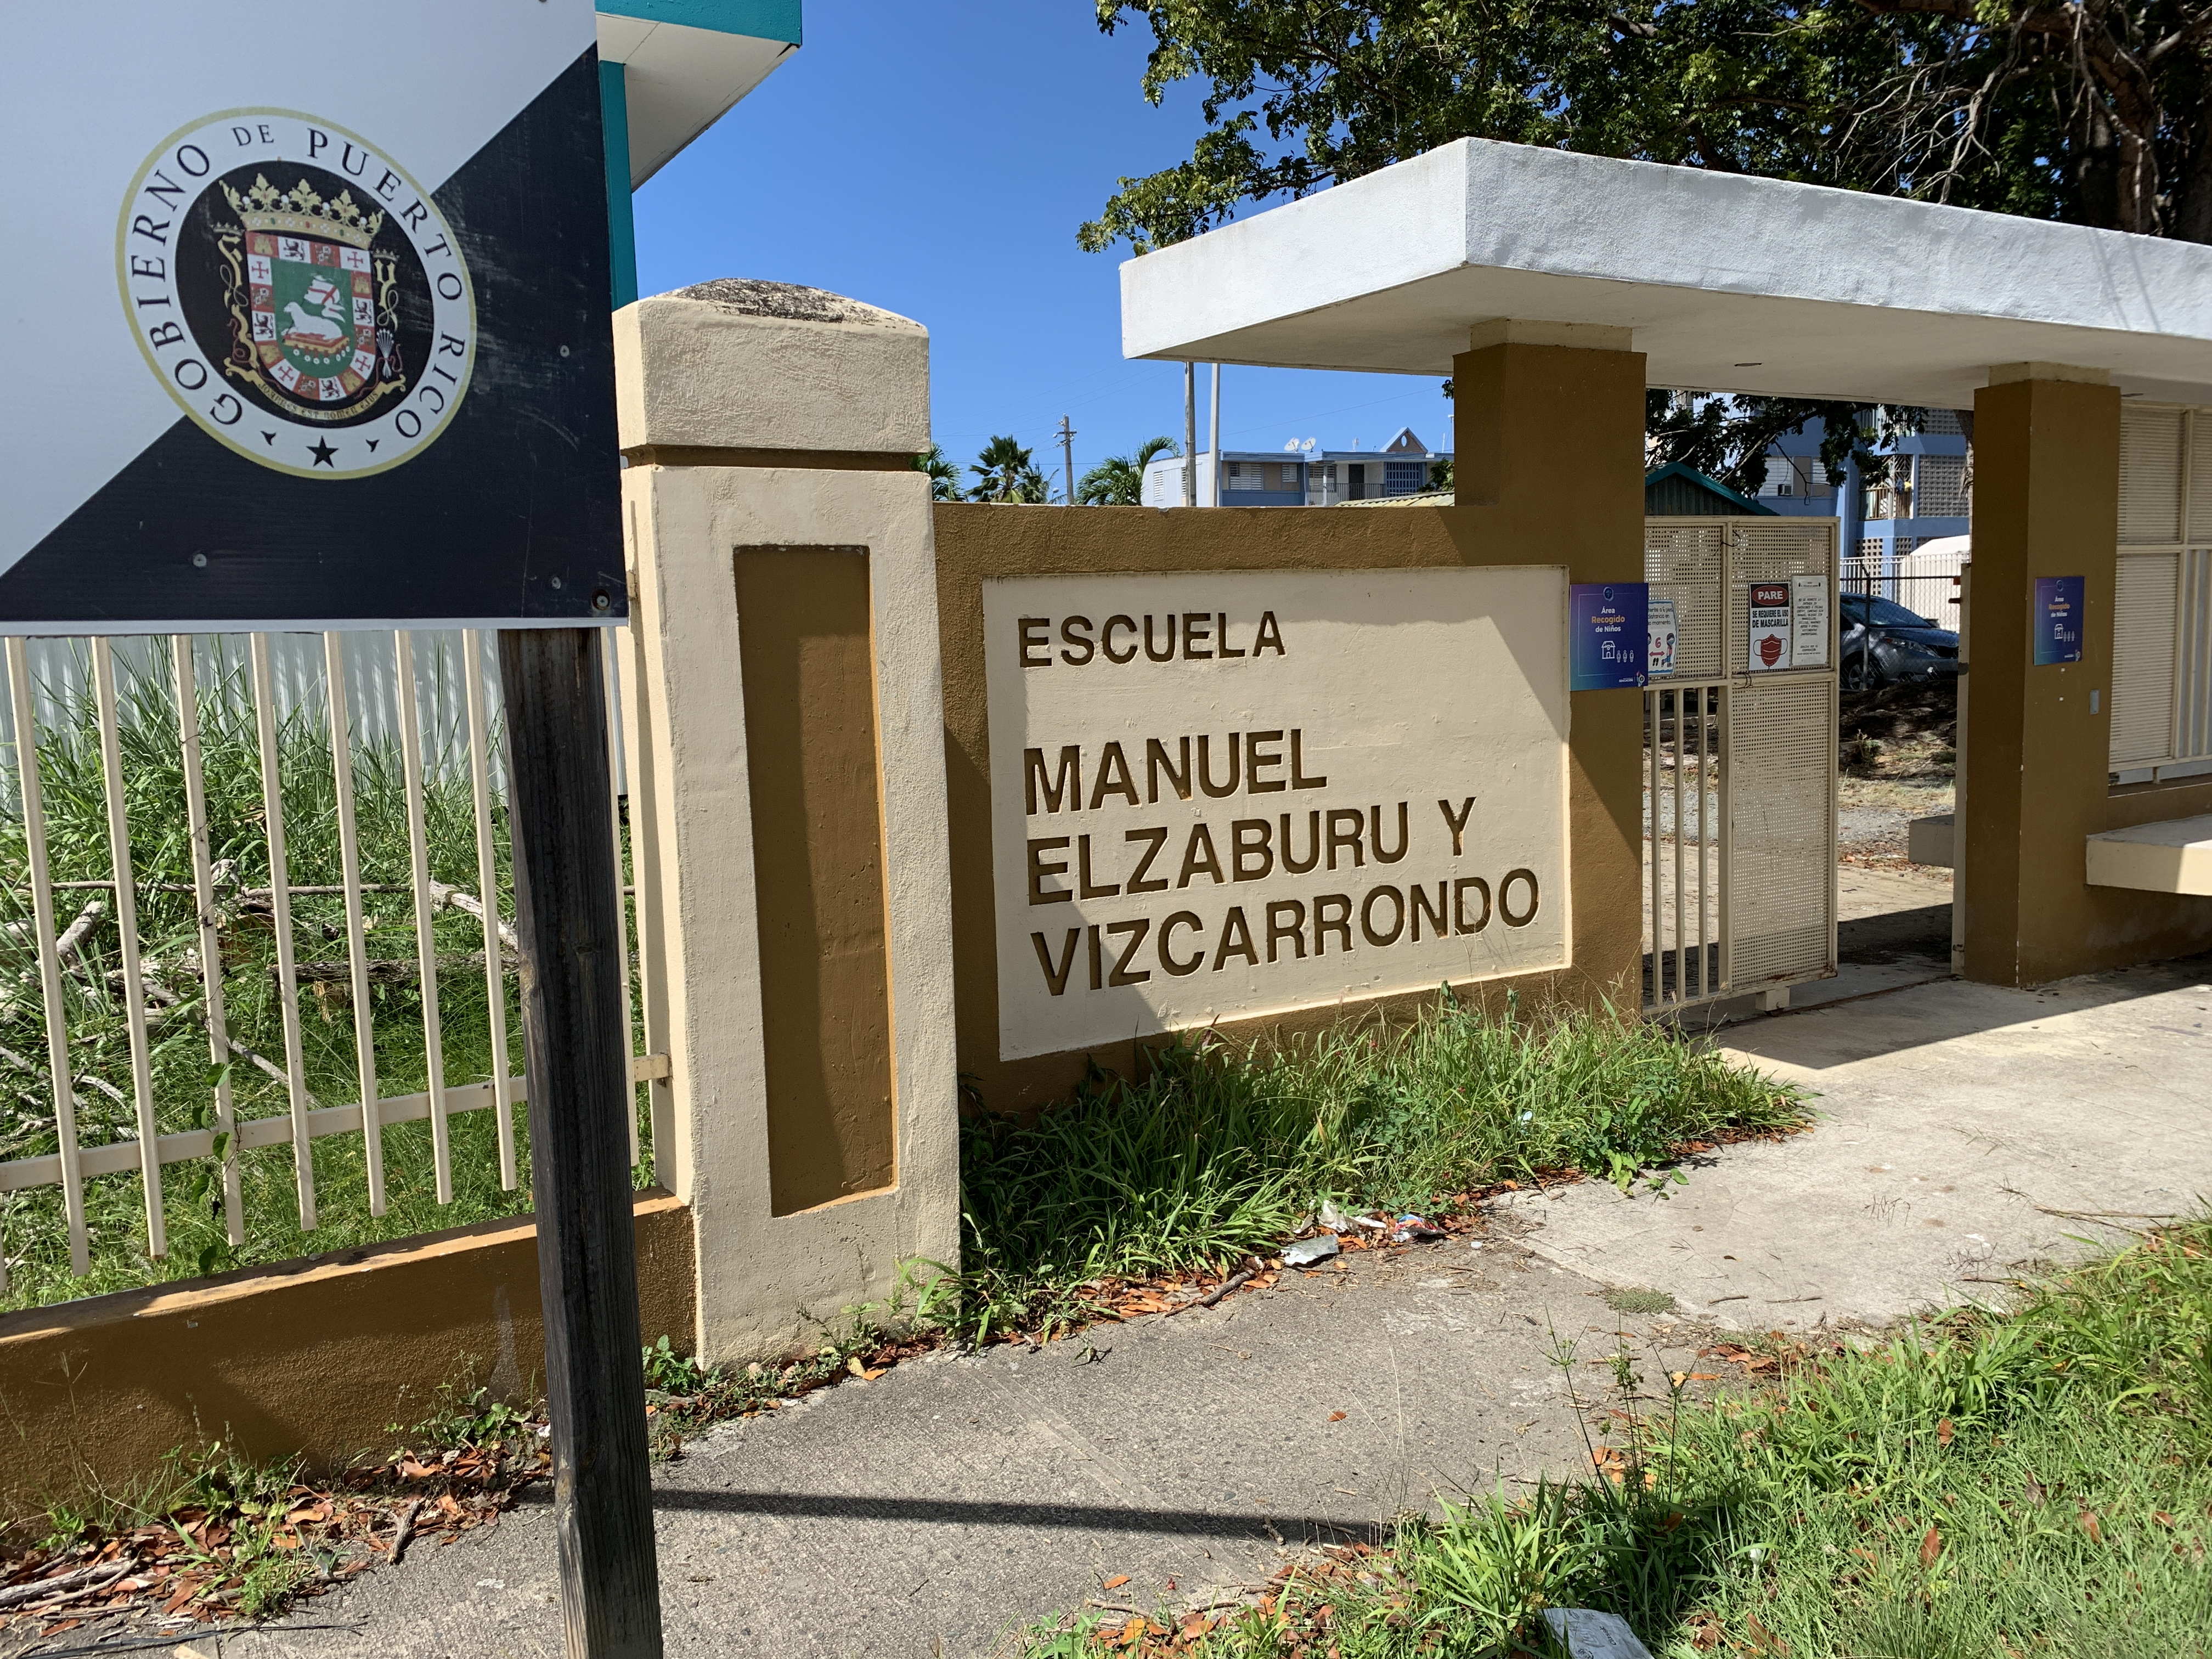 Escuela Manuel Elzaburu y Vizcarrondo